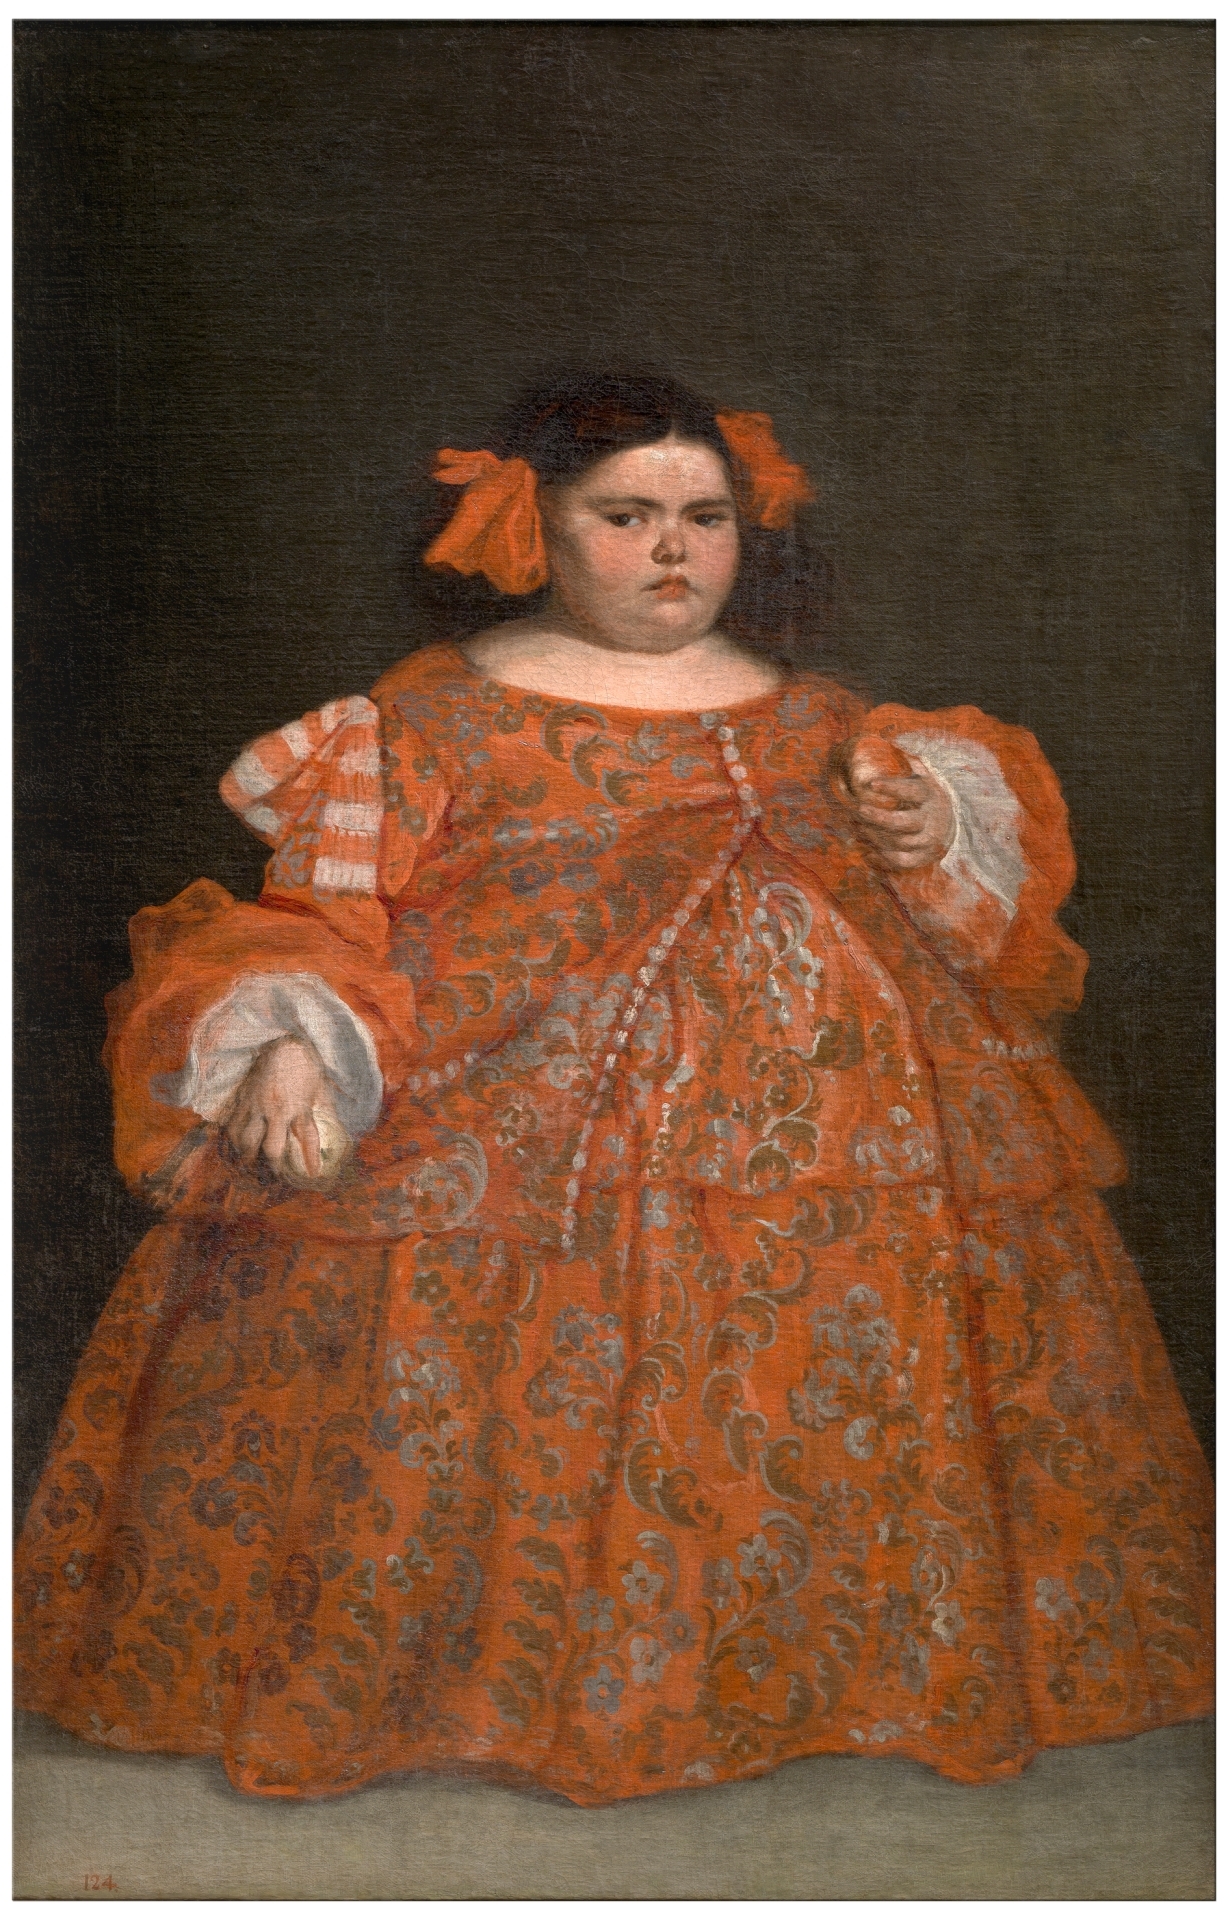 Eugenia Martínez Vallejo, vestida by Juan Carreño de Miranda - c. 1680 - 165 x 107 cm Museo del Prado